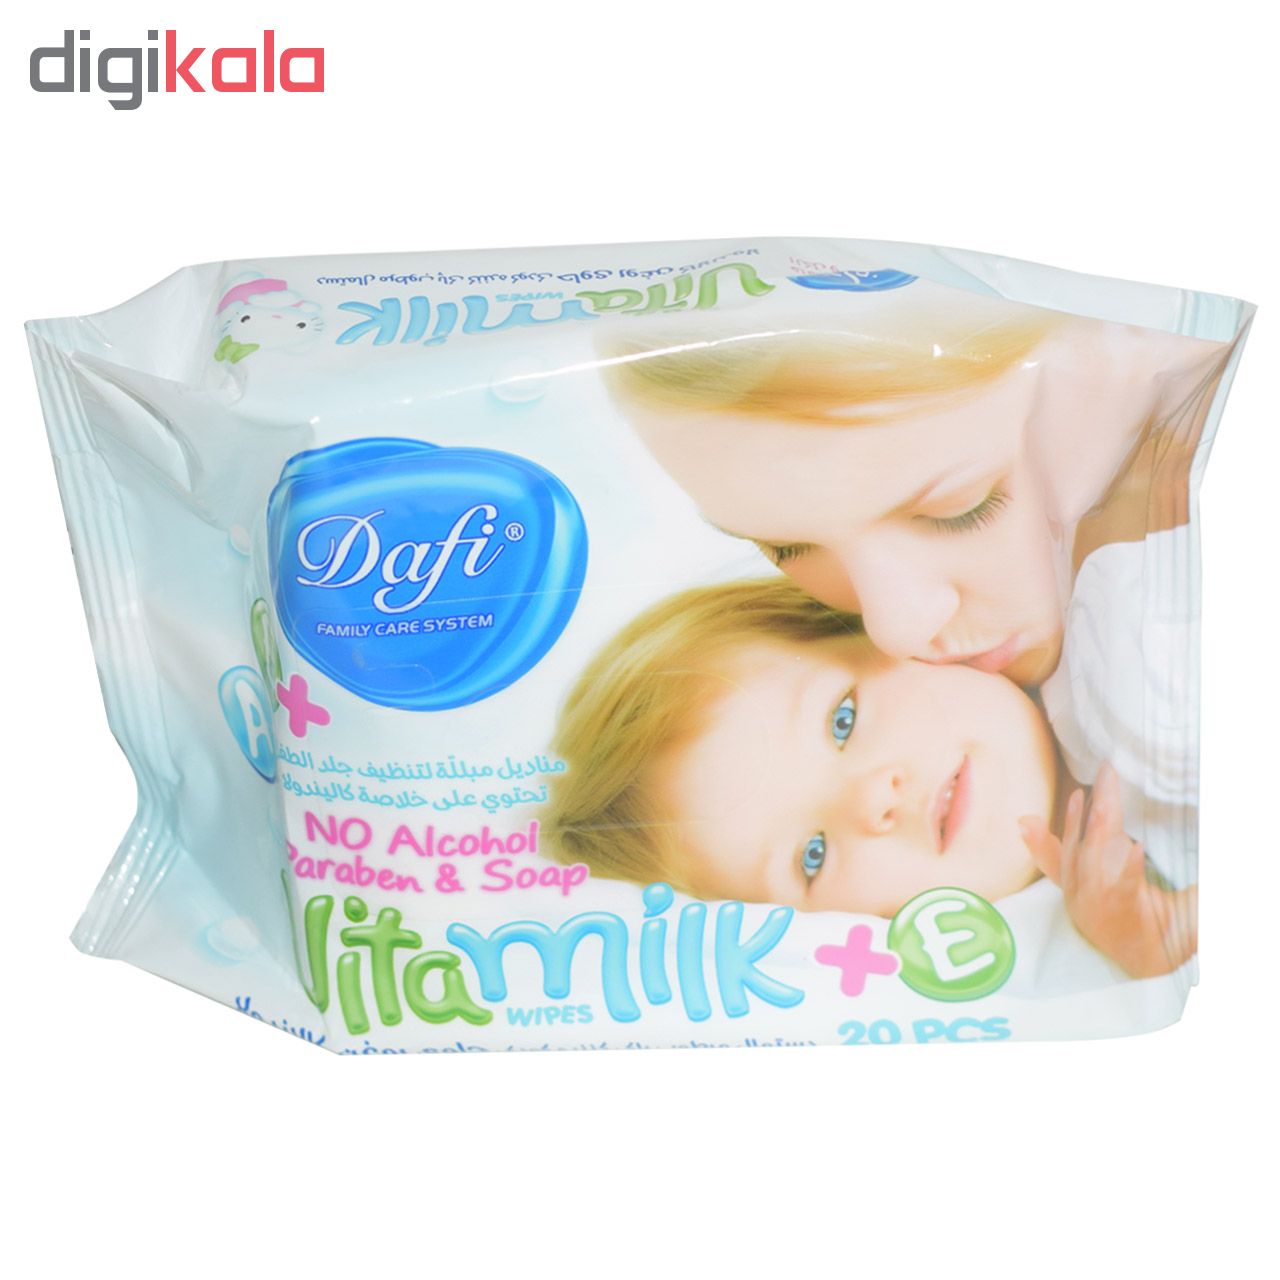 دستمال مرطوب کودک دافی مدل Vita Milk بسته 20 عددی